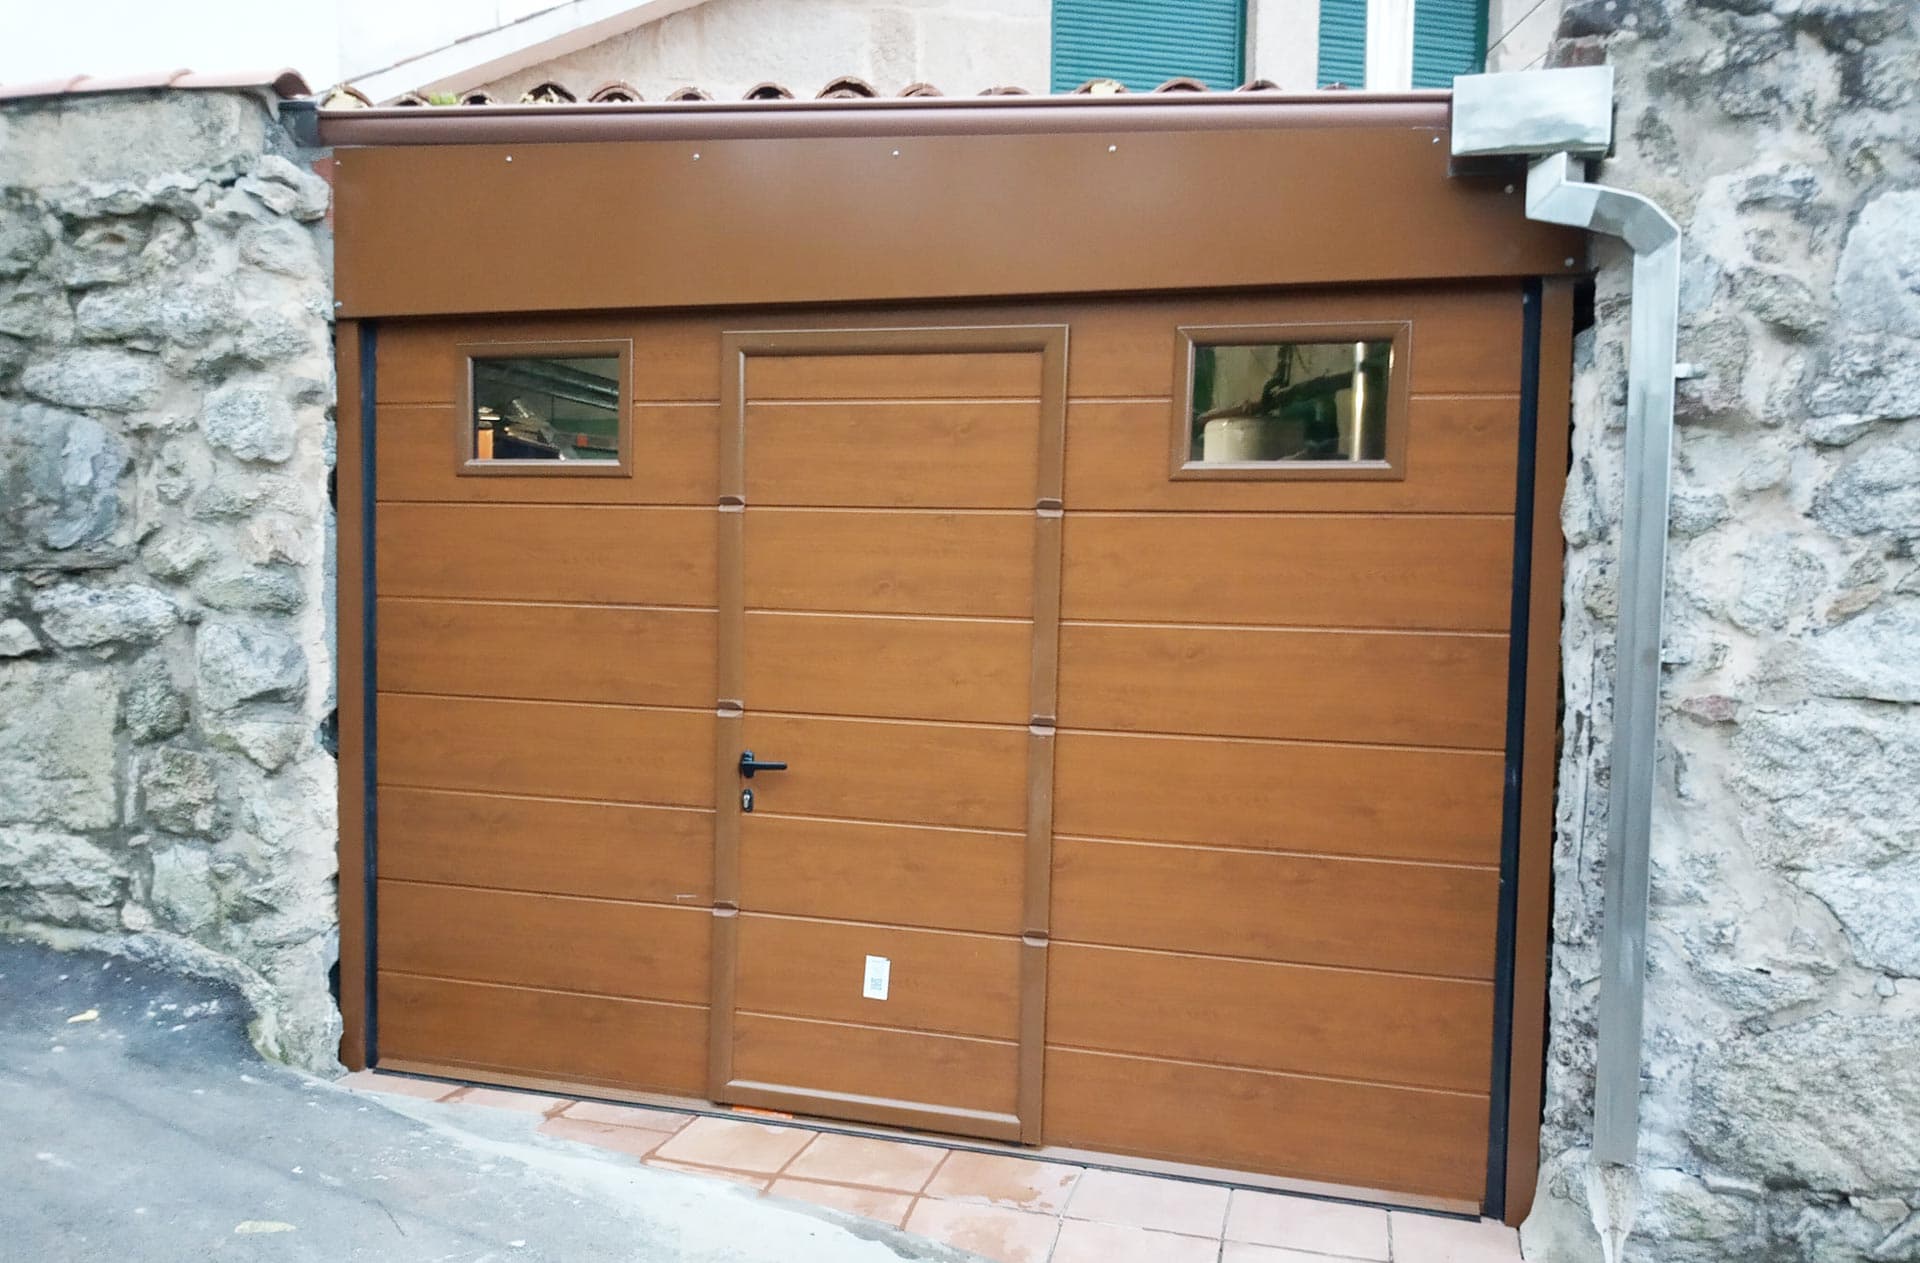   Tenemos tu nueva puerta de garaje en Pontevedra